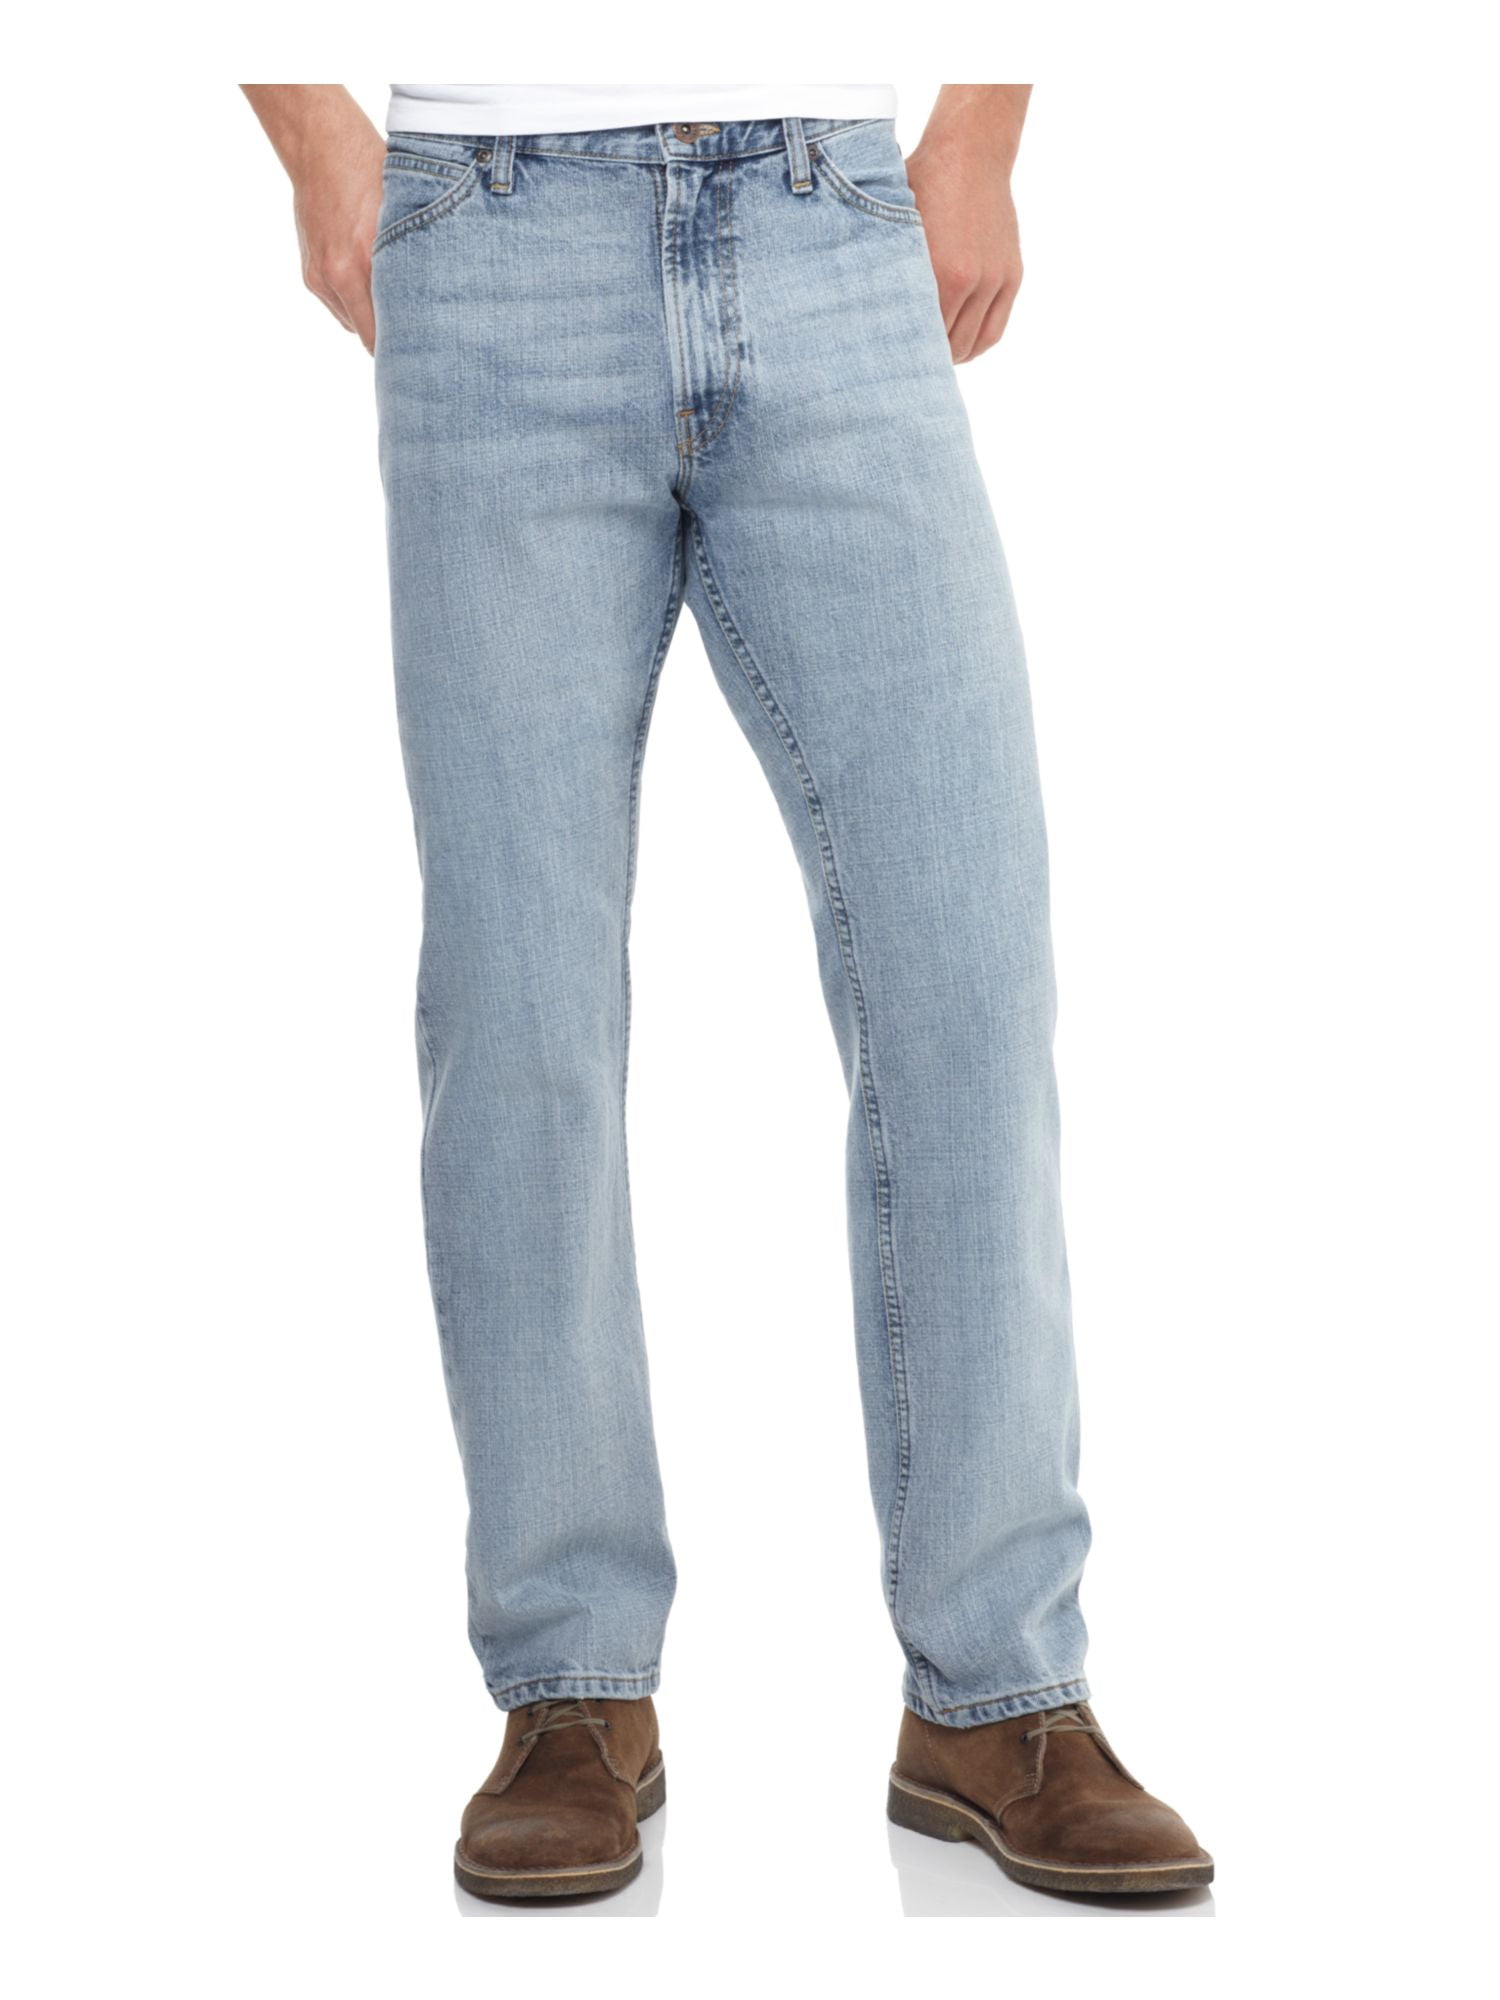 Mens Jeans 50X32 - Walmart.com